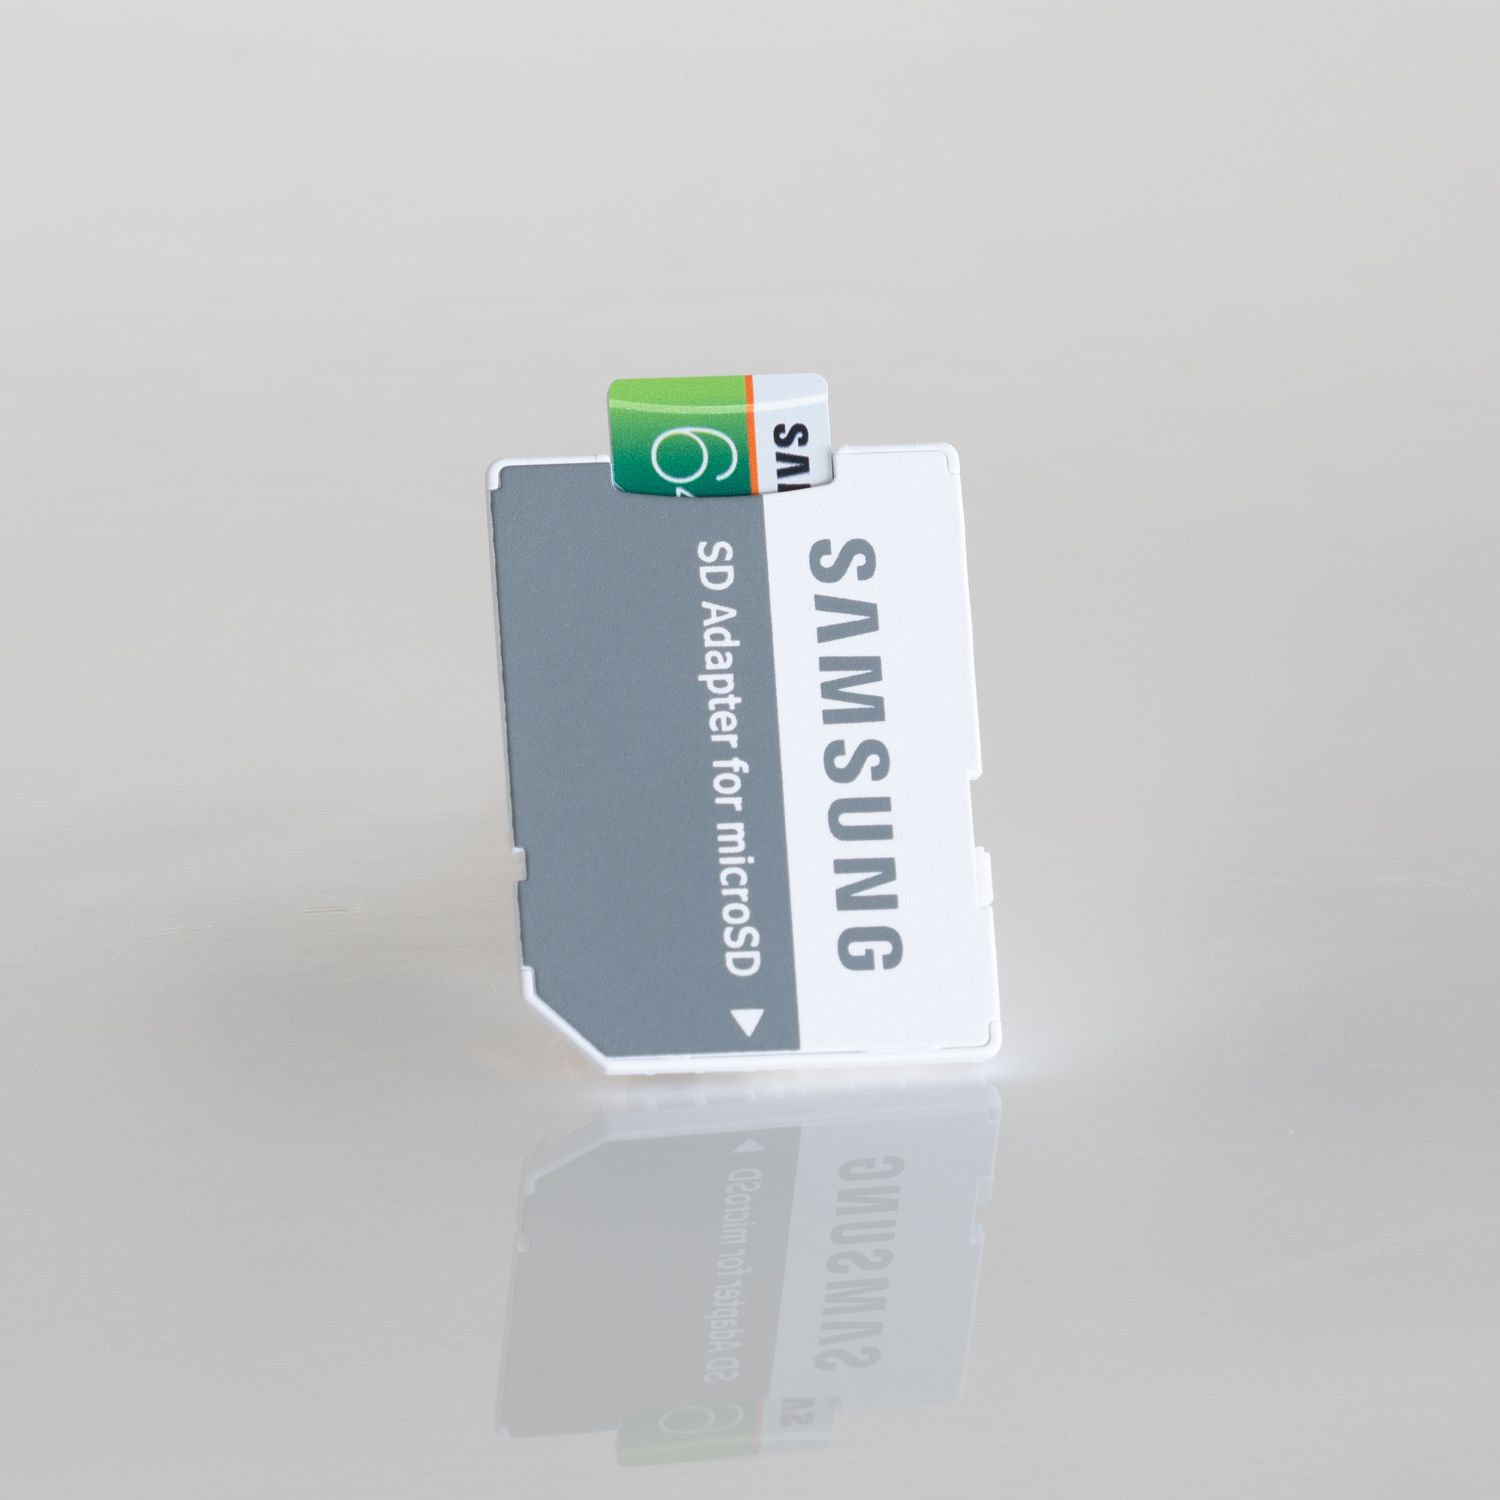 hero SQ Samsung 64GB MicroSD EVO Card with Adapter 5 6f6013a60bc6475baae99ae35d7df9c7